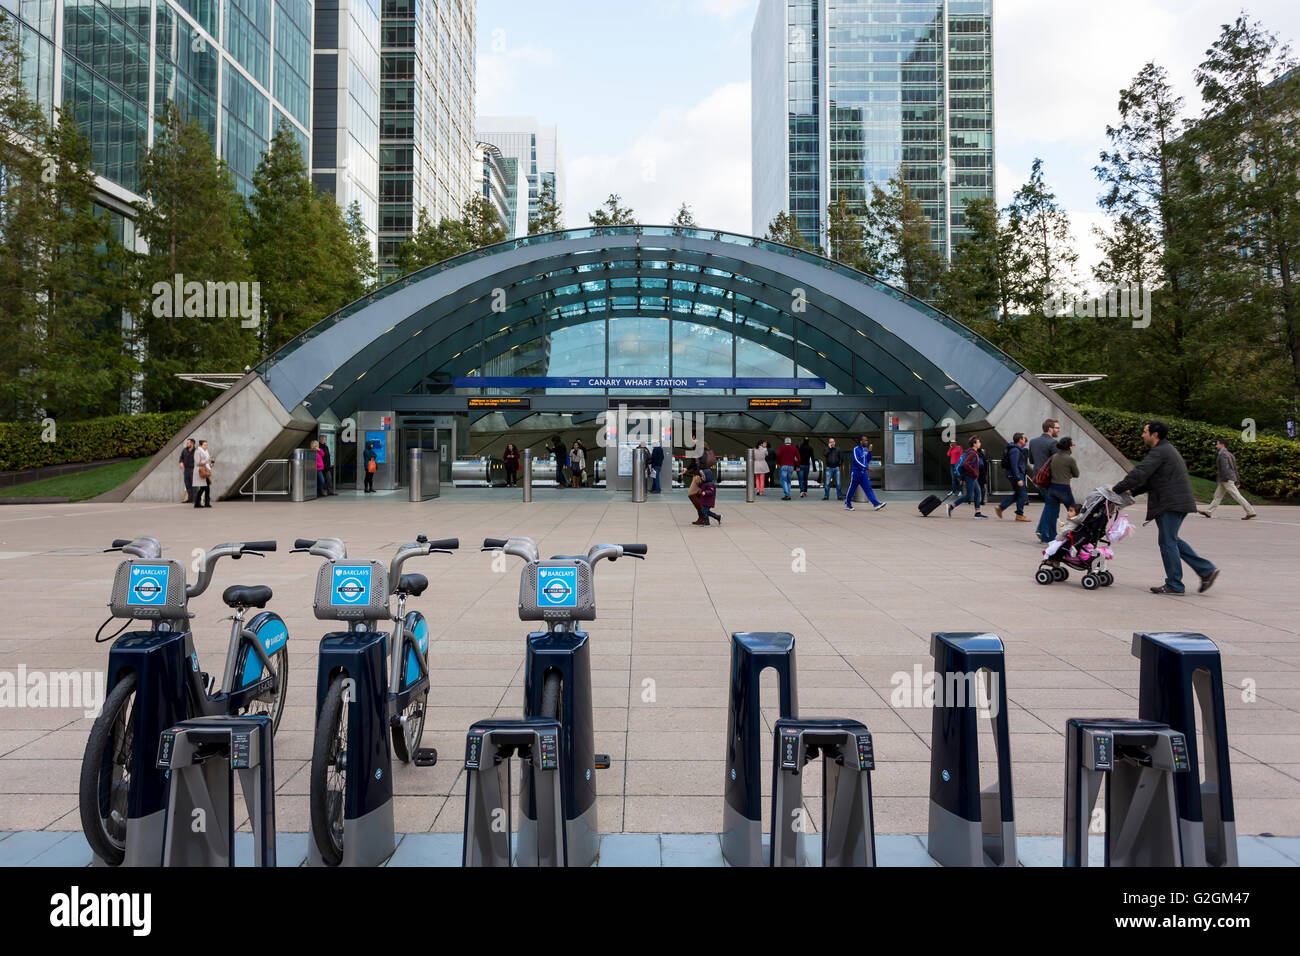 Verrière haute technologie entrée de la station de métro de Canary Wharf à Londres Banque D'Images